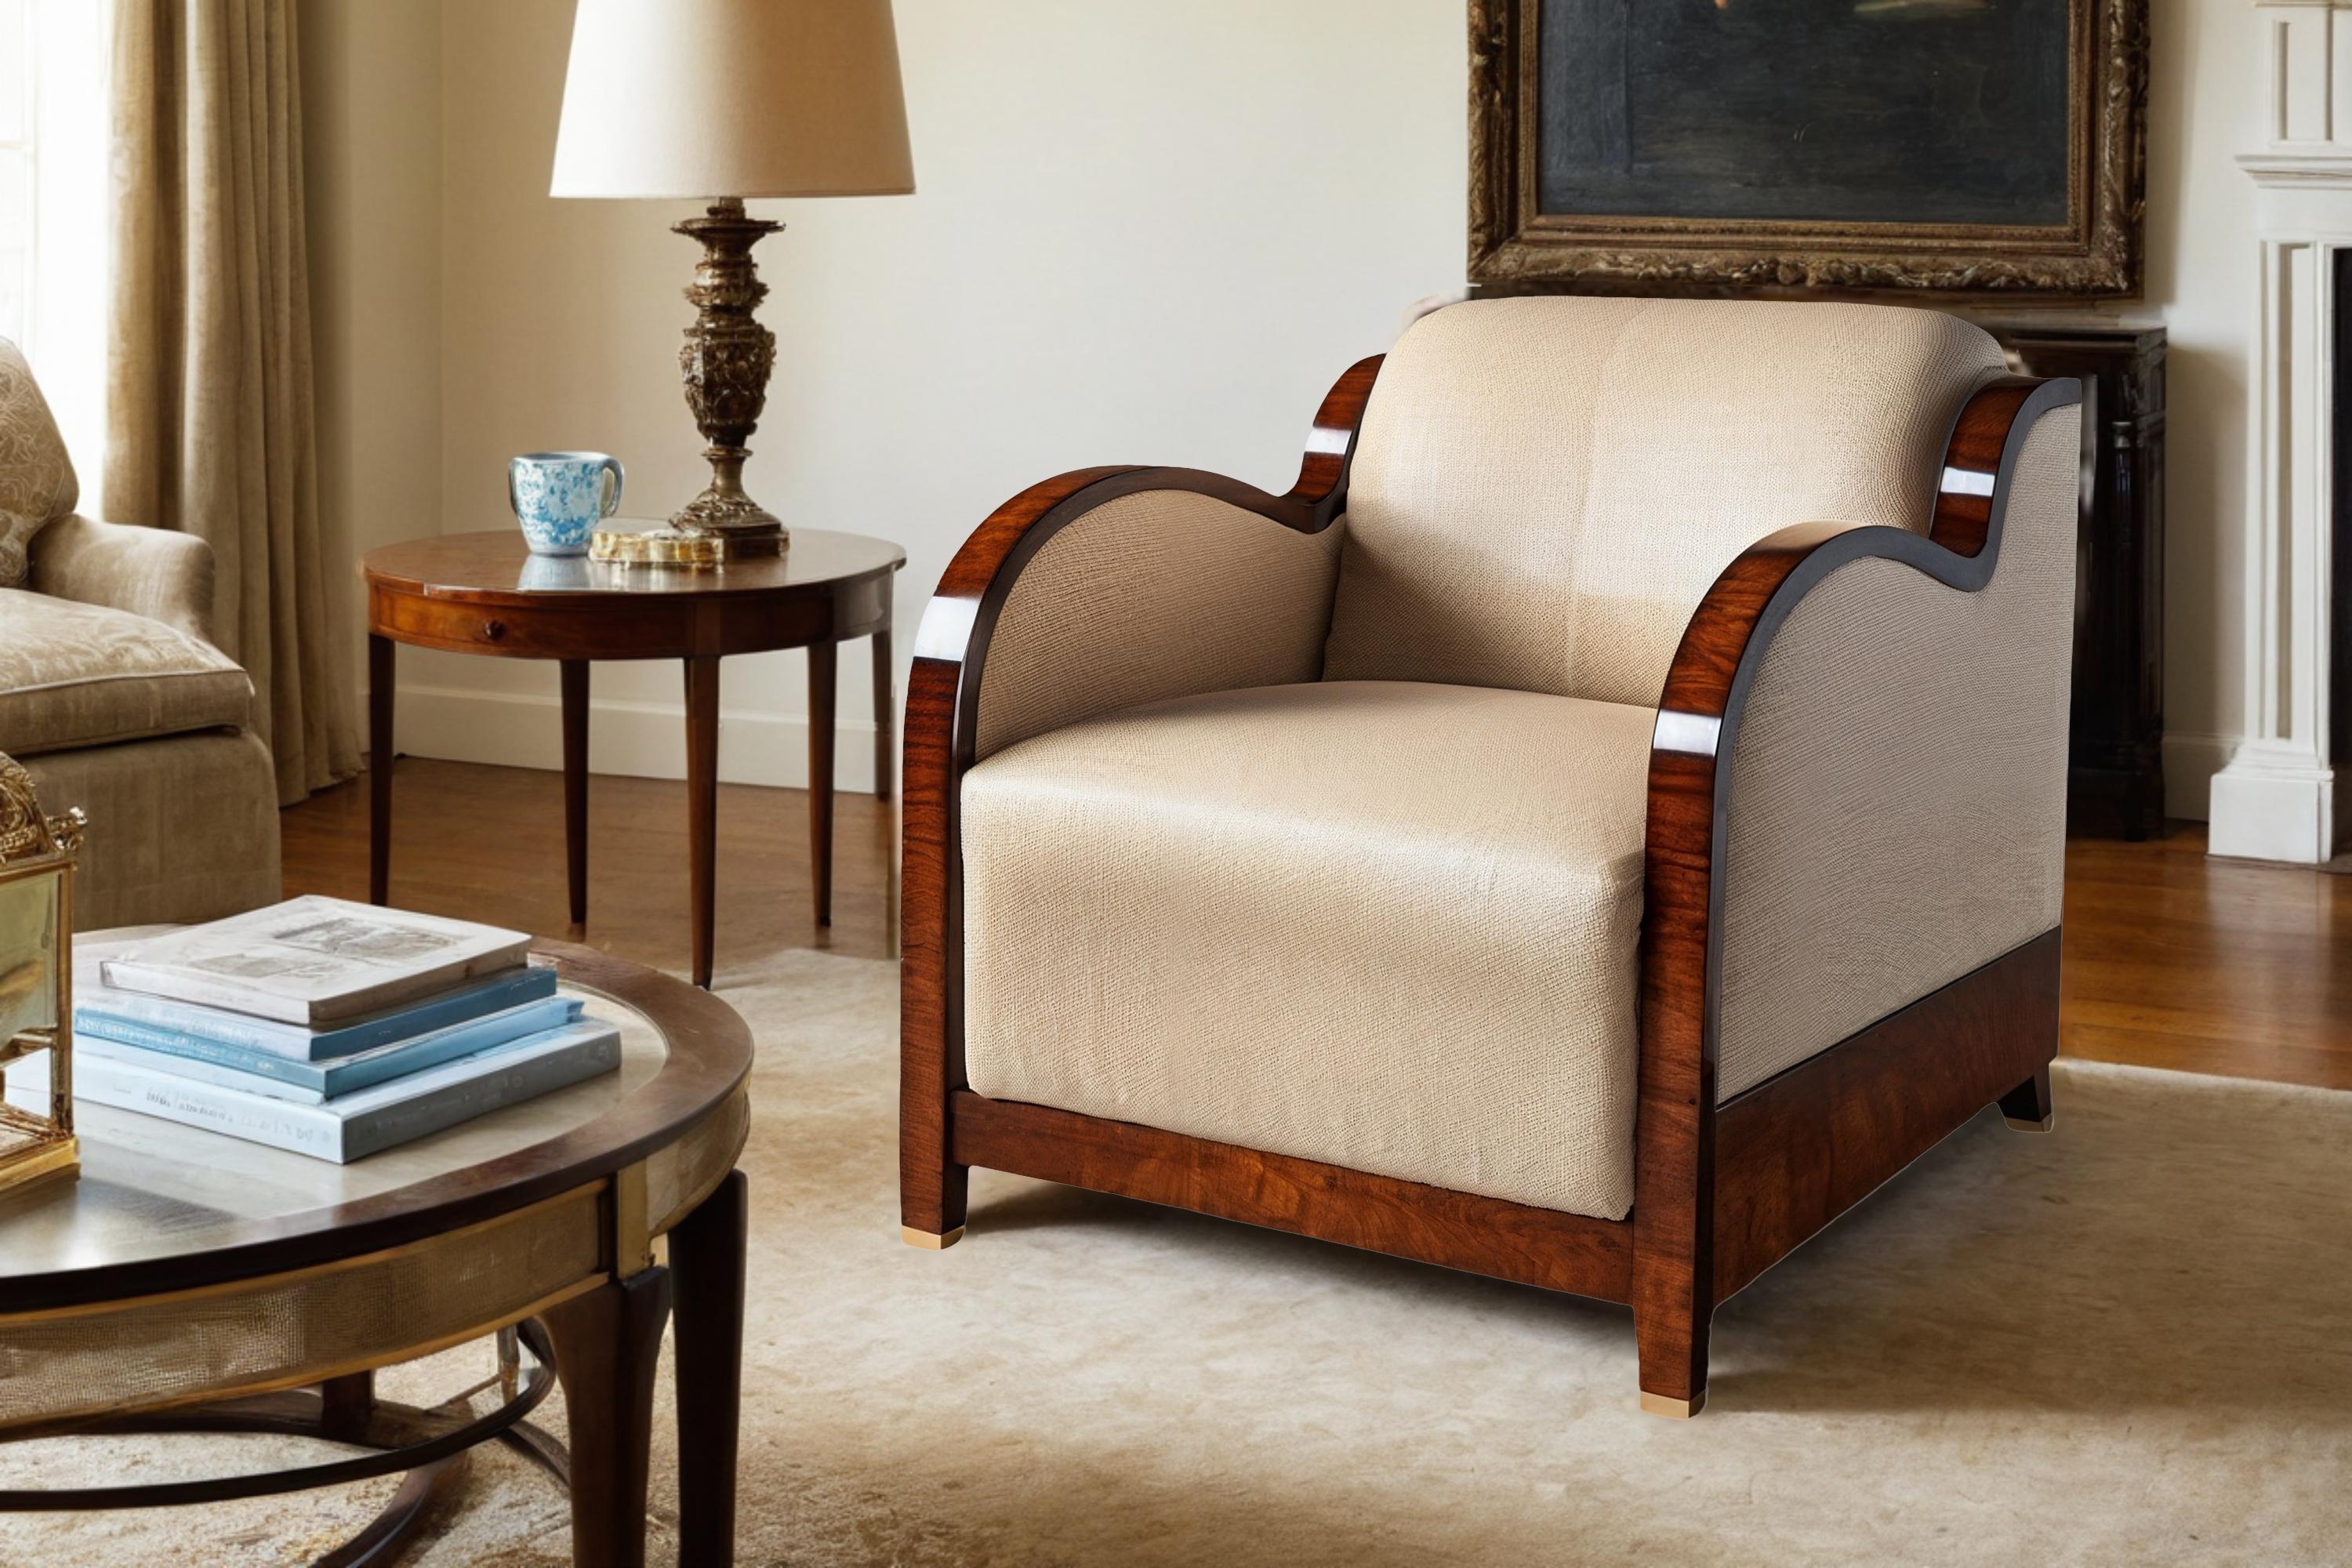 Tauchen Sie ein in den Glanz vergangener Epochen mit unserem faszinierenden Art Deco Sessel! Handgefertigt aus luxuriösem weißem Leder und mit Mahagonifurnier in Hochglanzoptik veredelt, strahlt dieser Sessel Eleganz und Raffinesse aus. Sein